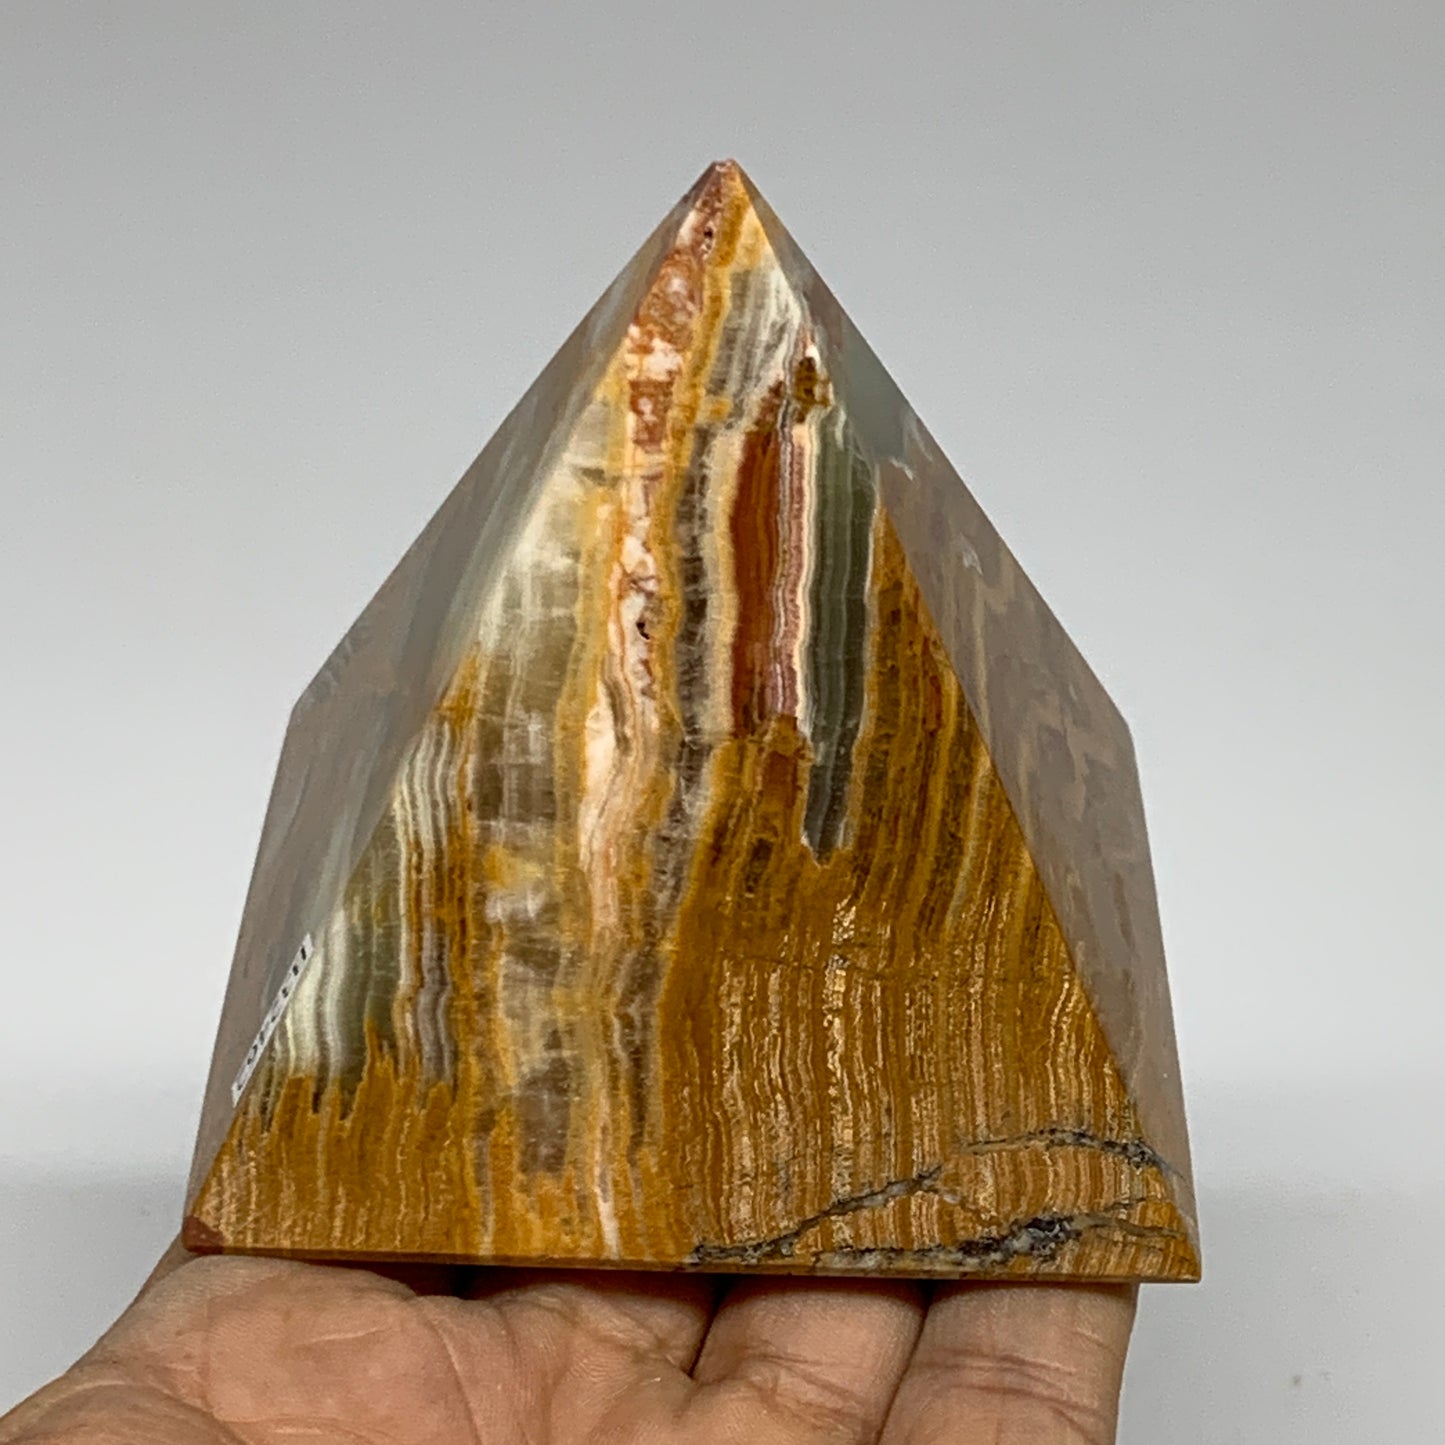 0.84 lbs, 2.8"x2.9"x2.9", Green Onyx Pyramid Gemstone Crystal, B32462